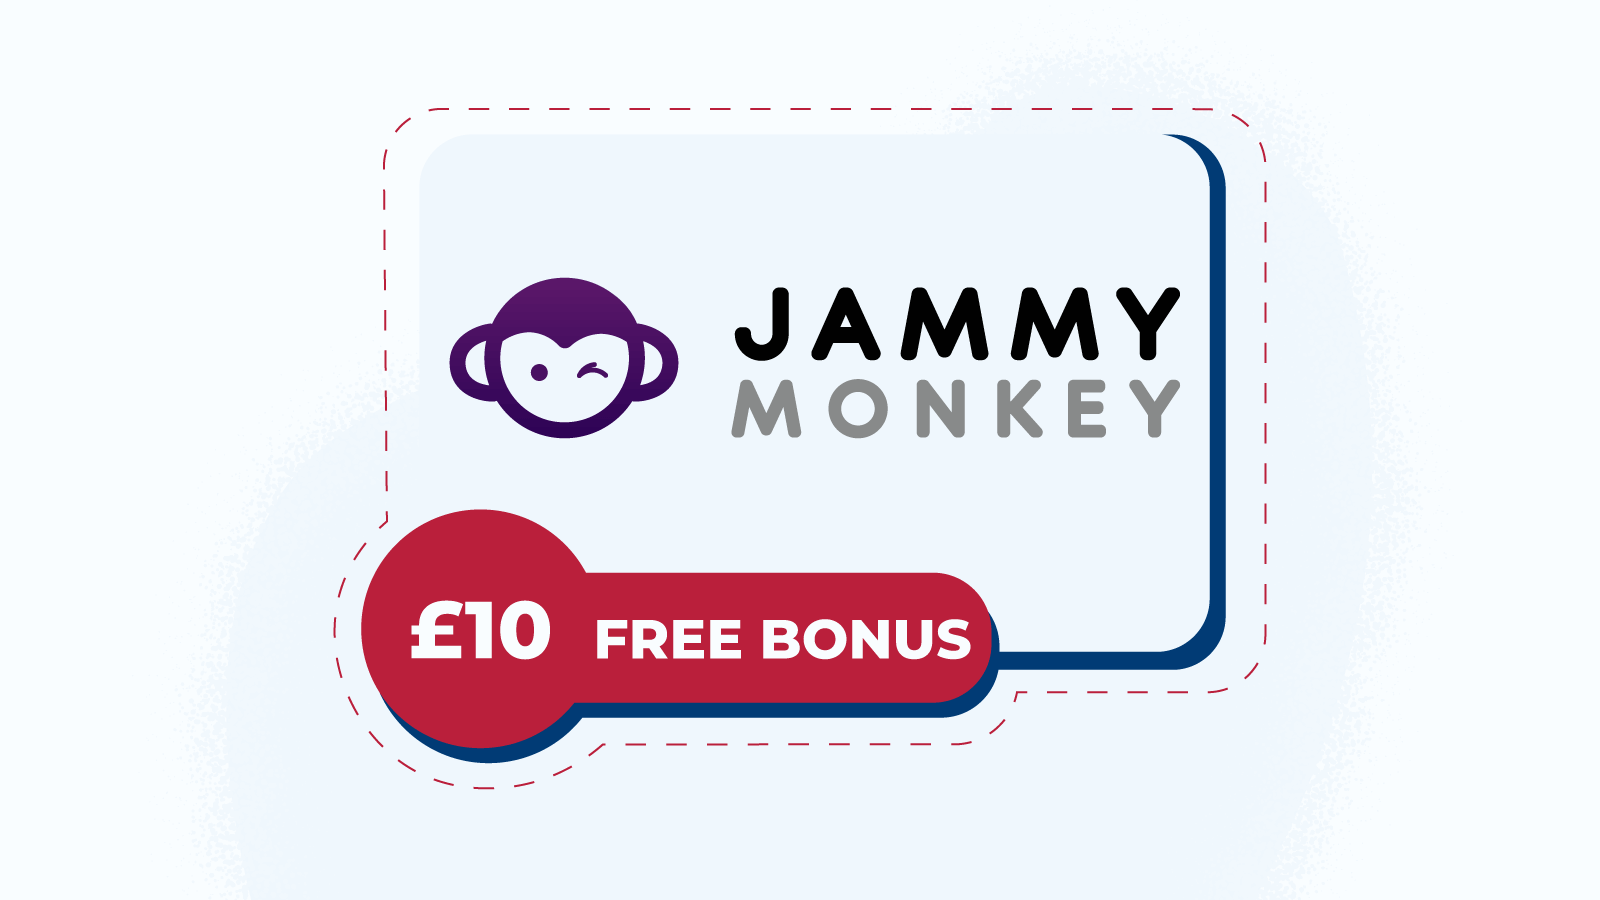 Jammy Monkey – Top New Mobile Casino With £10 Free Bonus